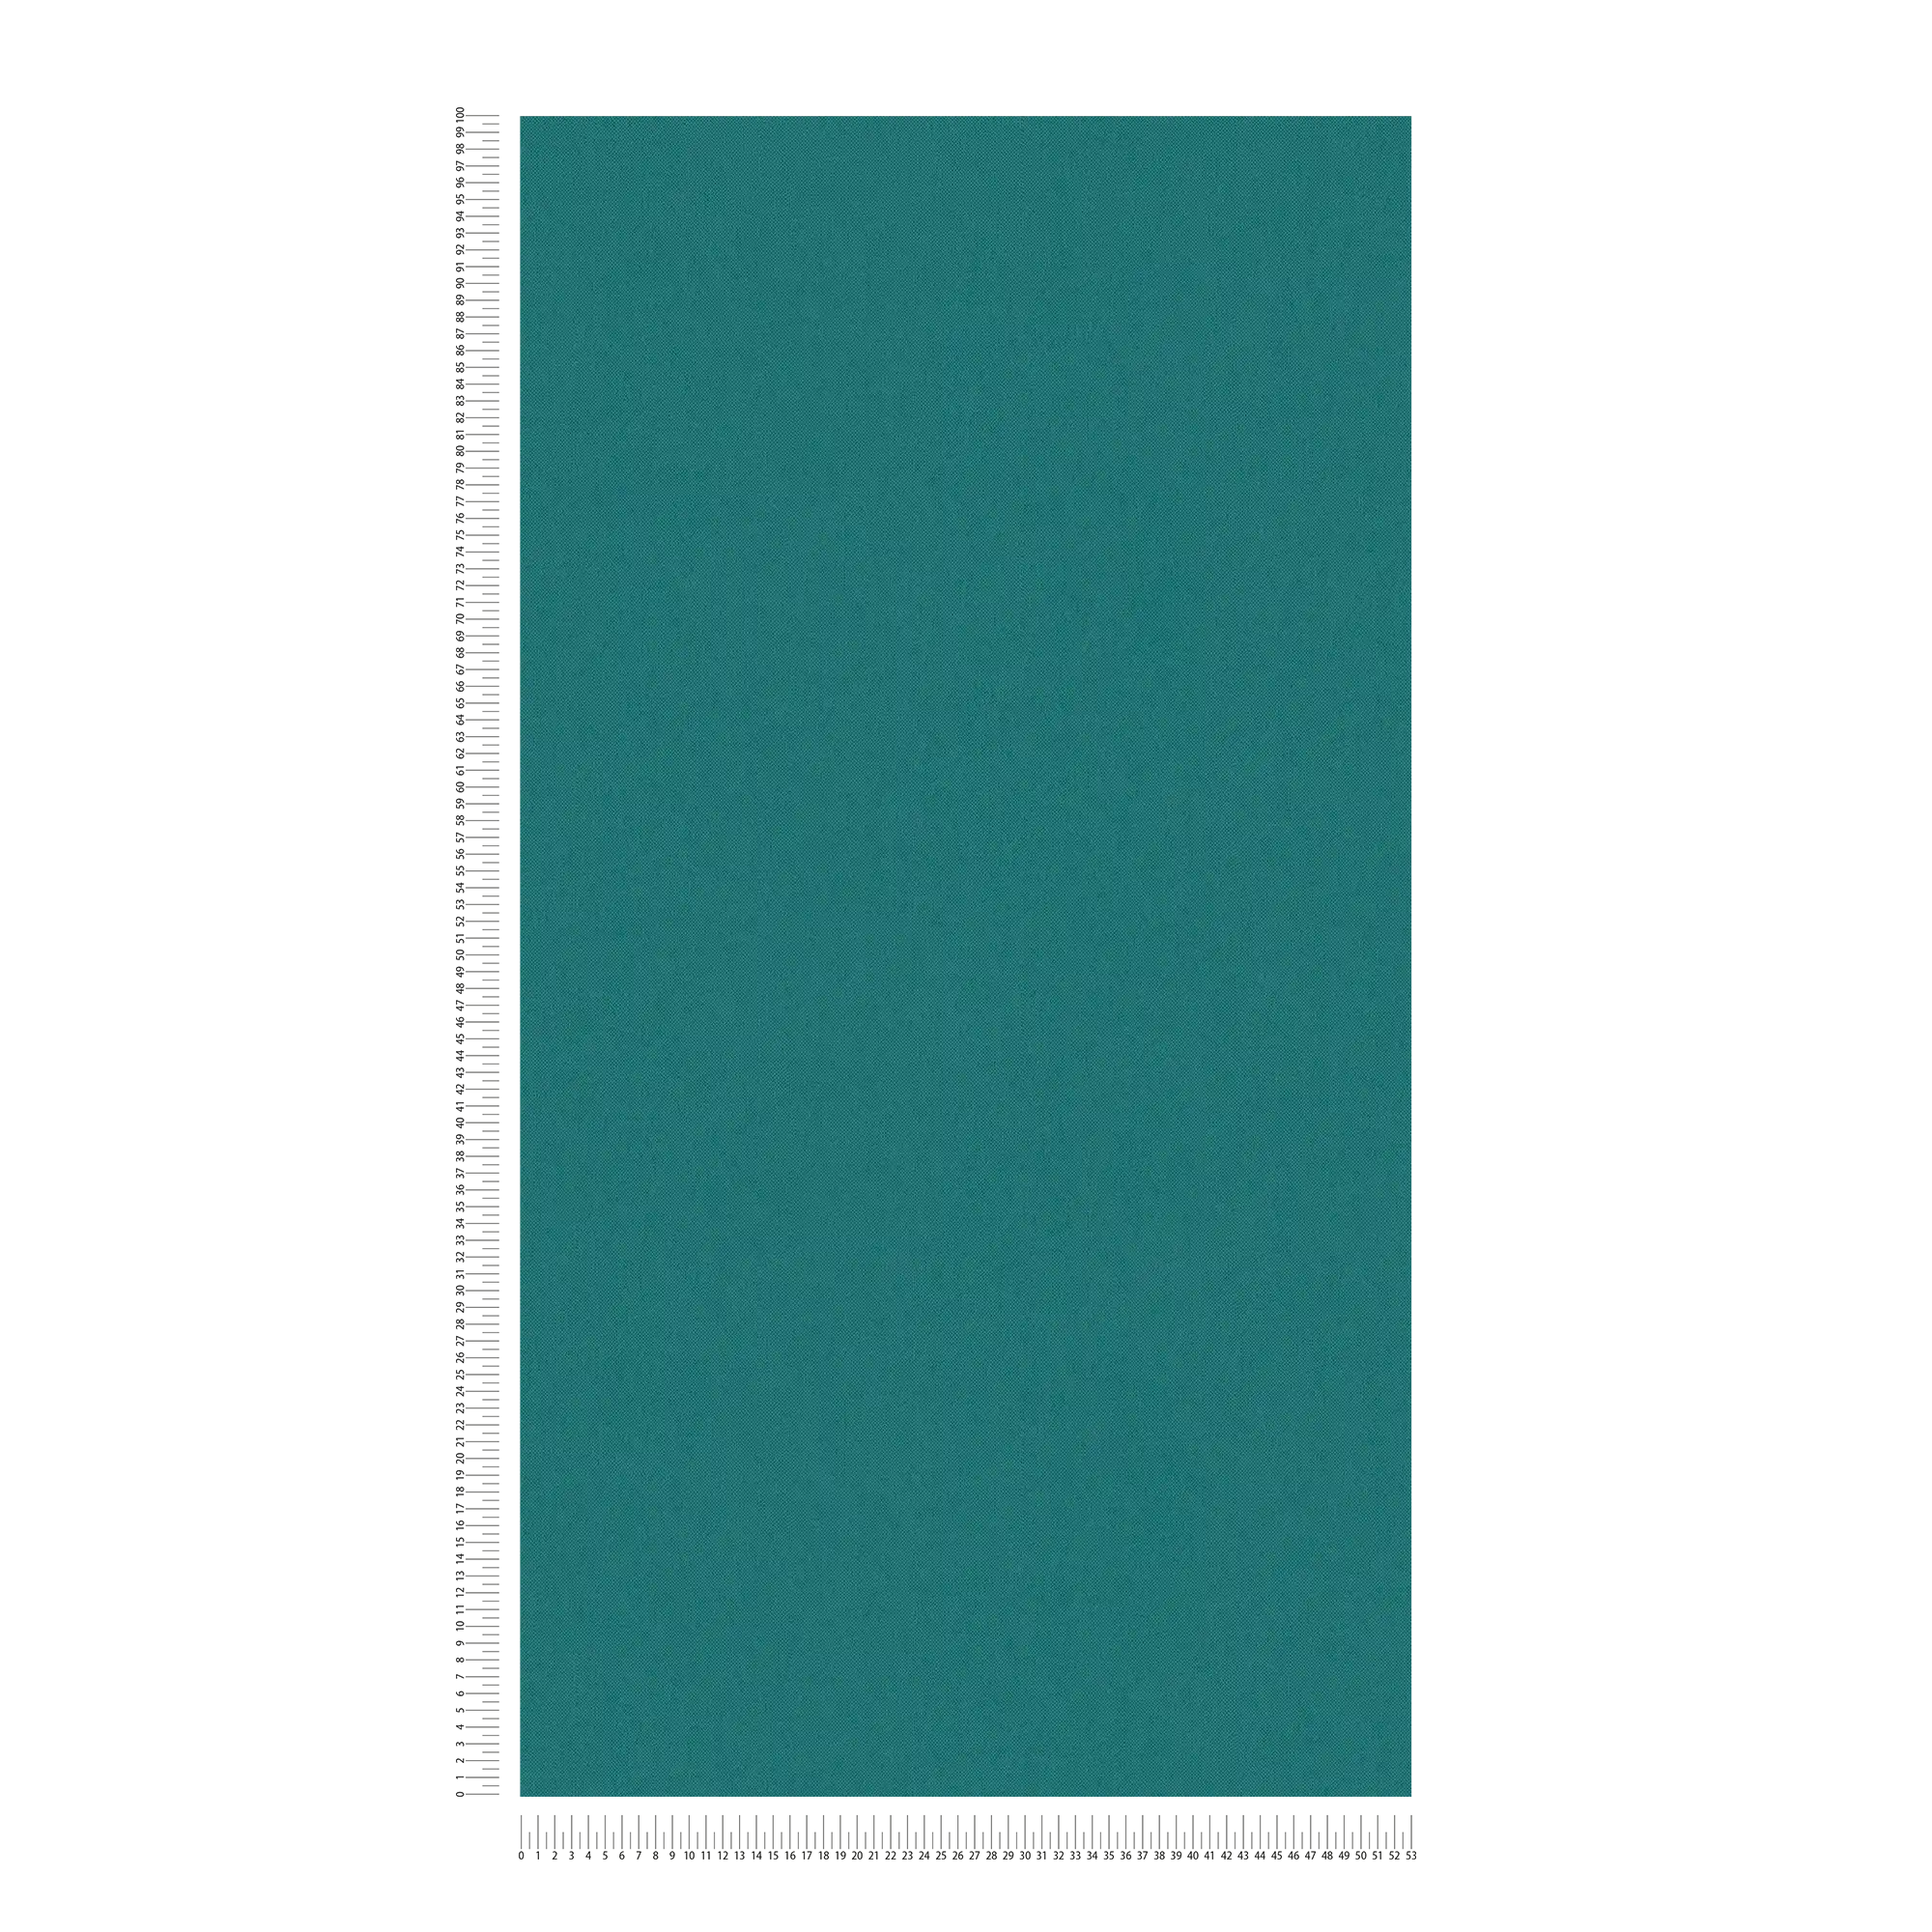             behang donkergroen met textielstructuur mat uni waterblauw
        